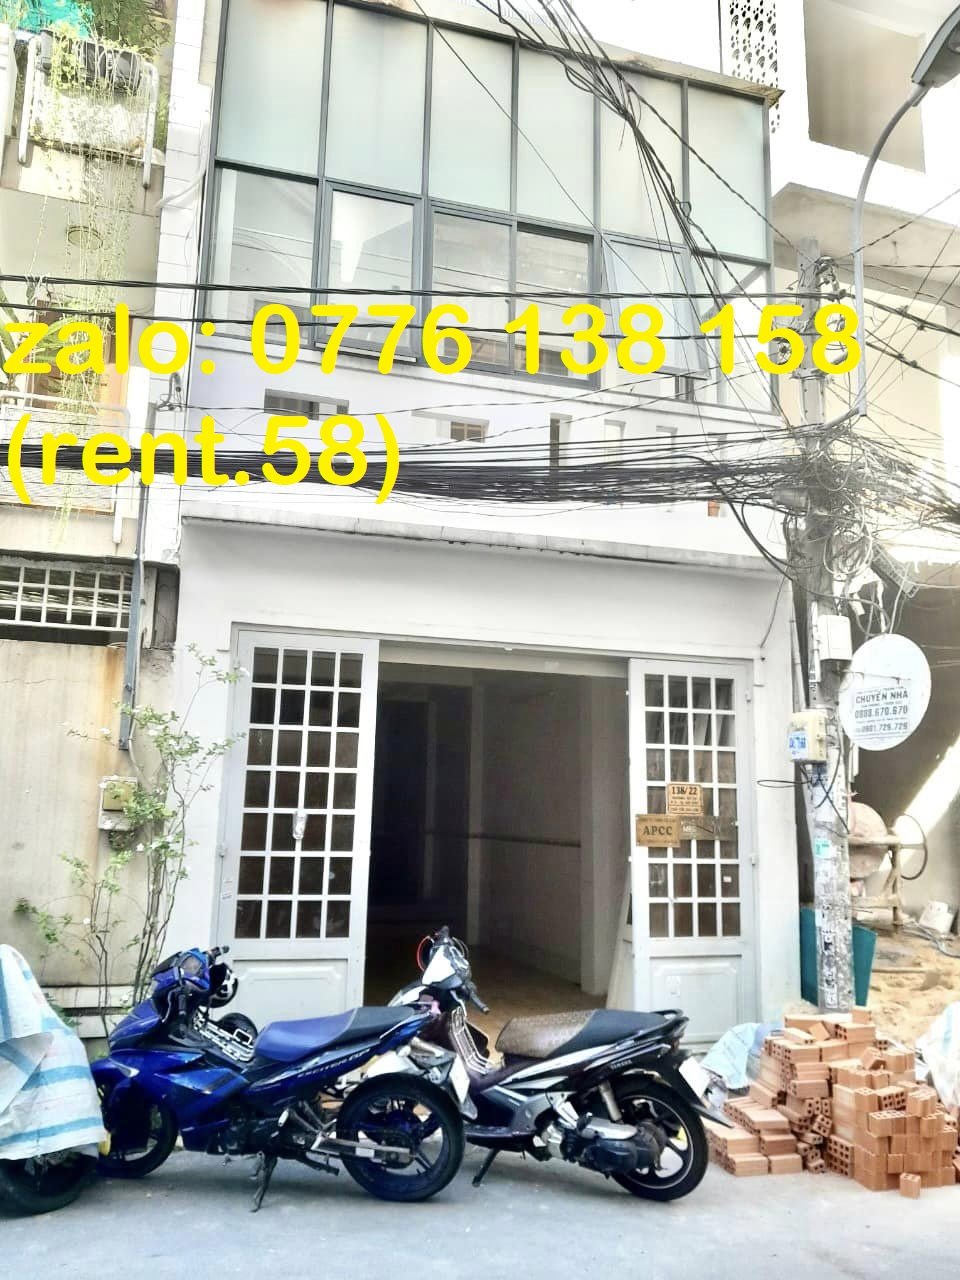 CHO THUÊ nhà đường số 20 Gò Vấp – Giá thuê 11.5 triệu/tháng gần Lê Đức Thọ, Quảng Hàm, Phan Văn Trị